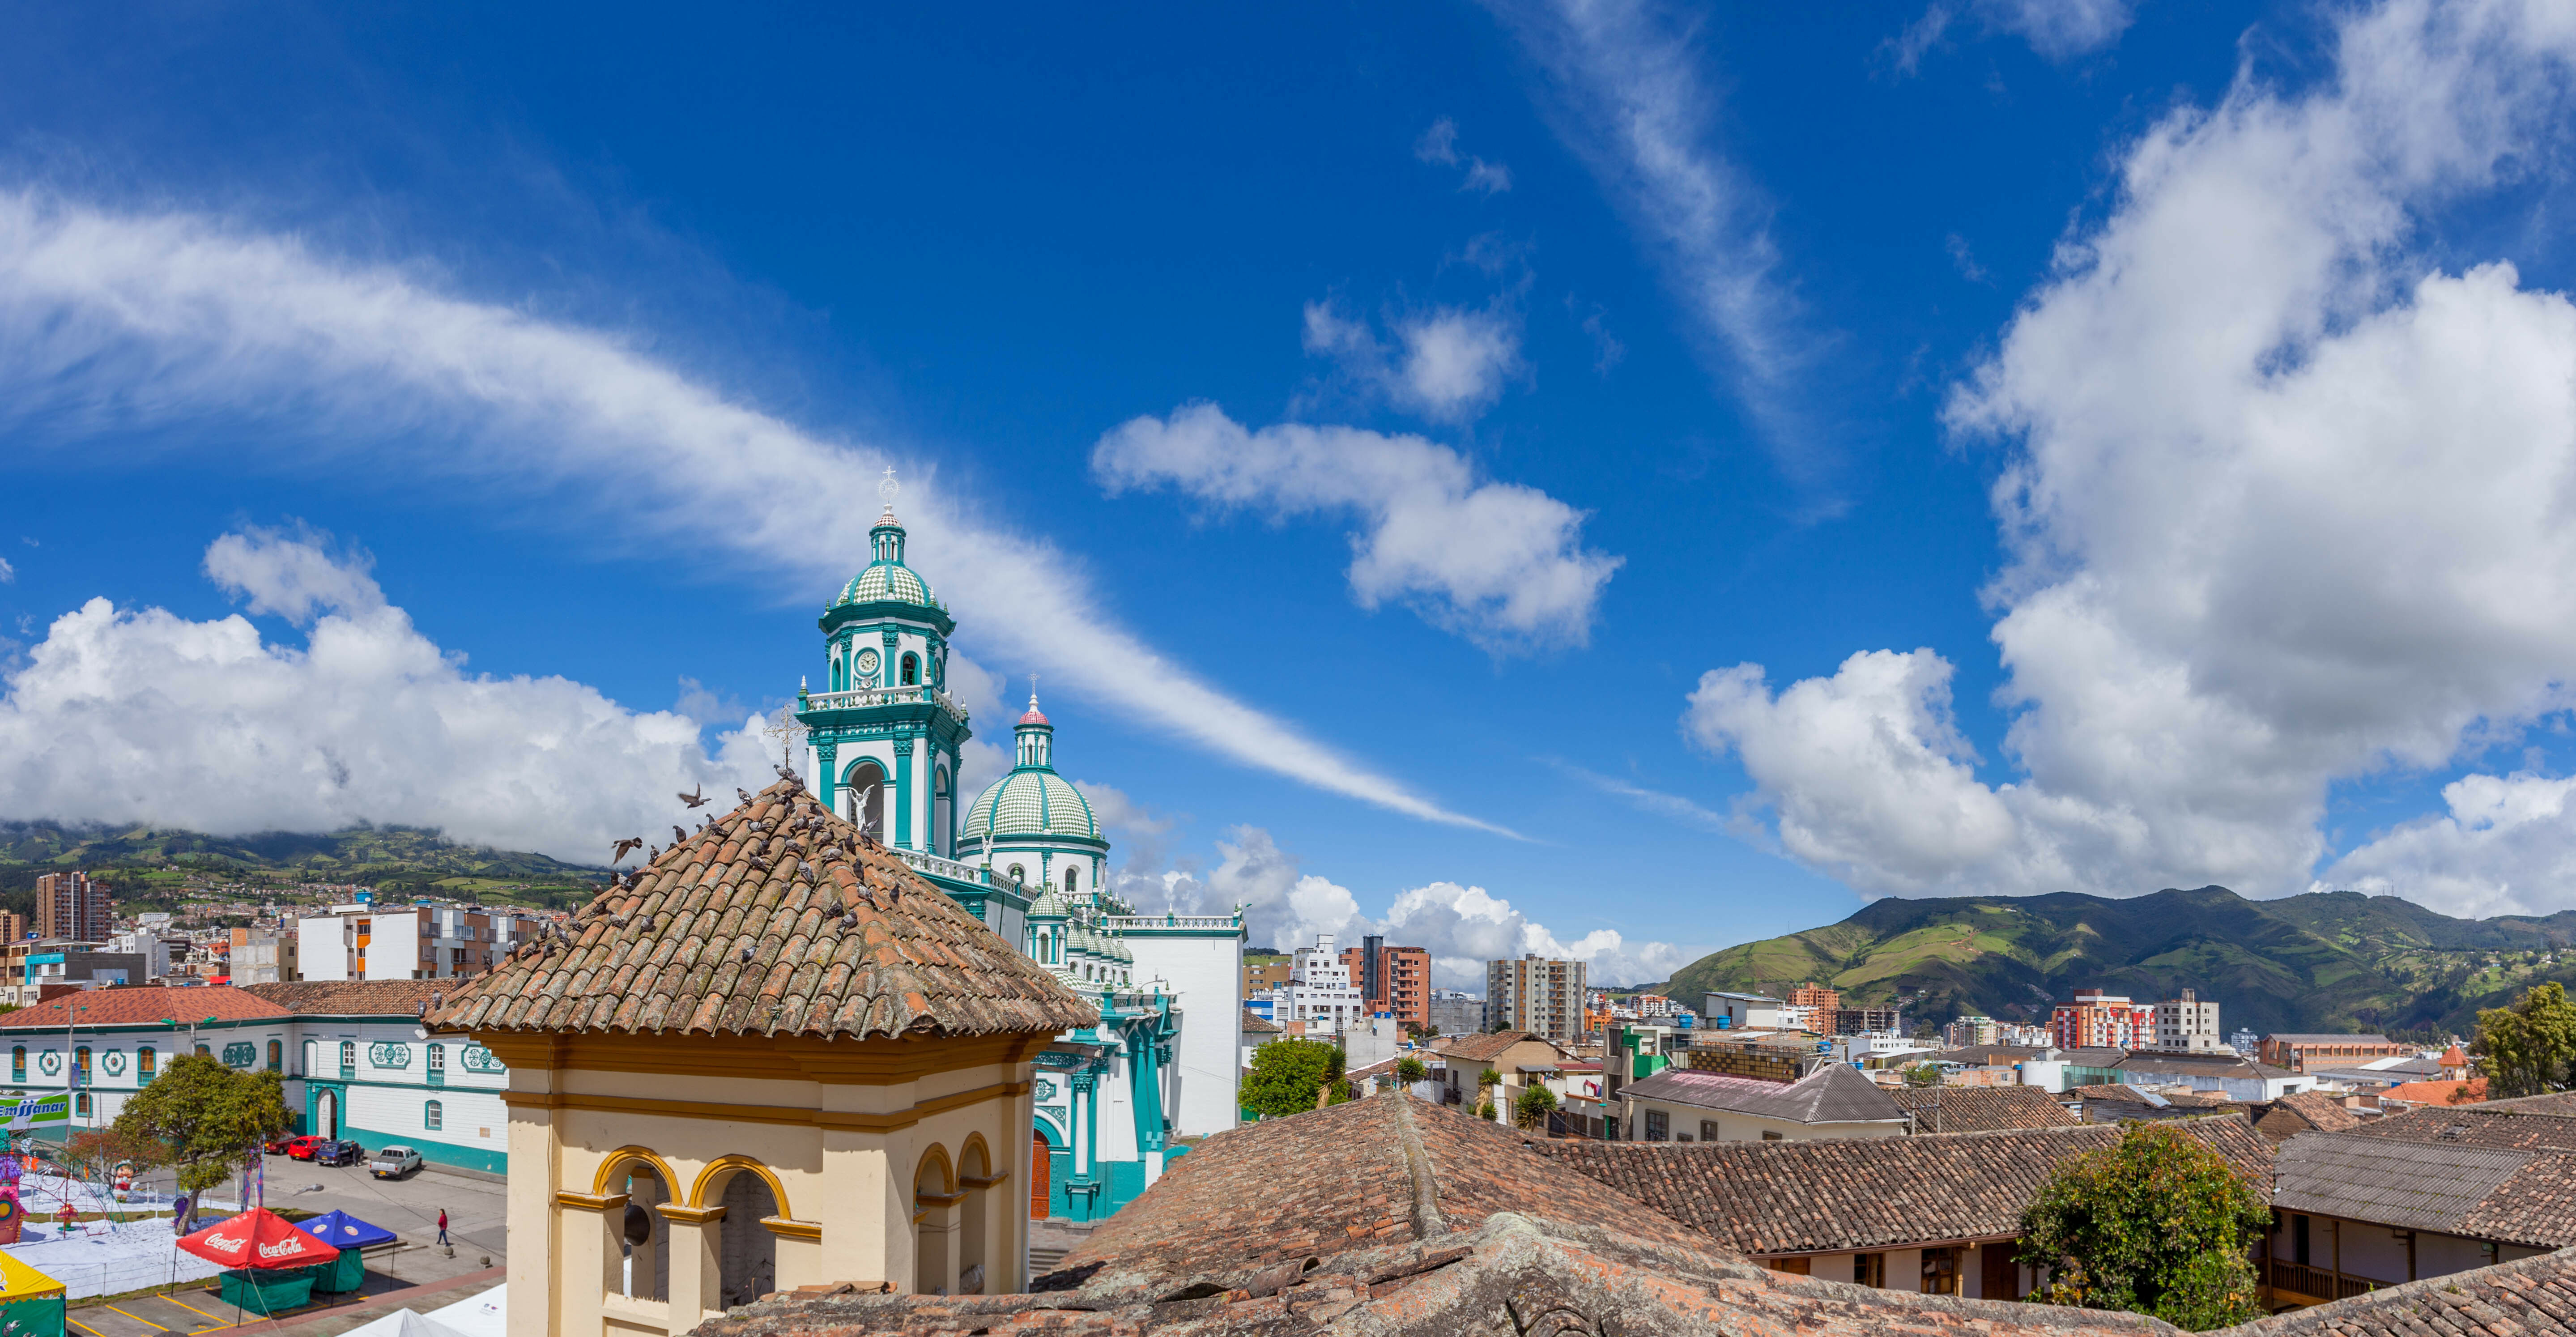 Vista desde nuestra terraza desde donde se aprecia la histórica cúpula de la iglesia de San Felipe,  arquitectura colonial en tapias y techos en teja de barro